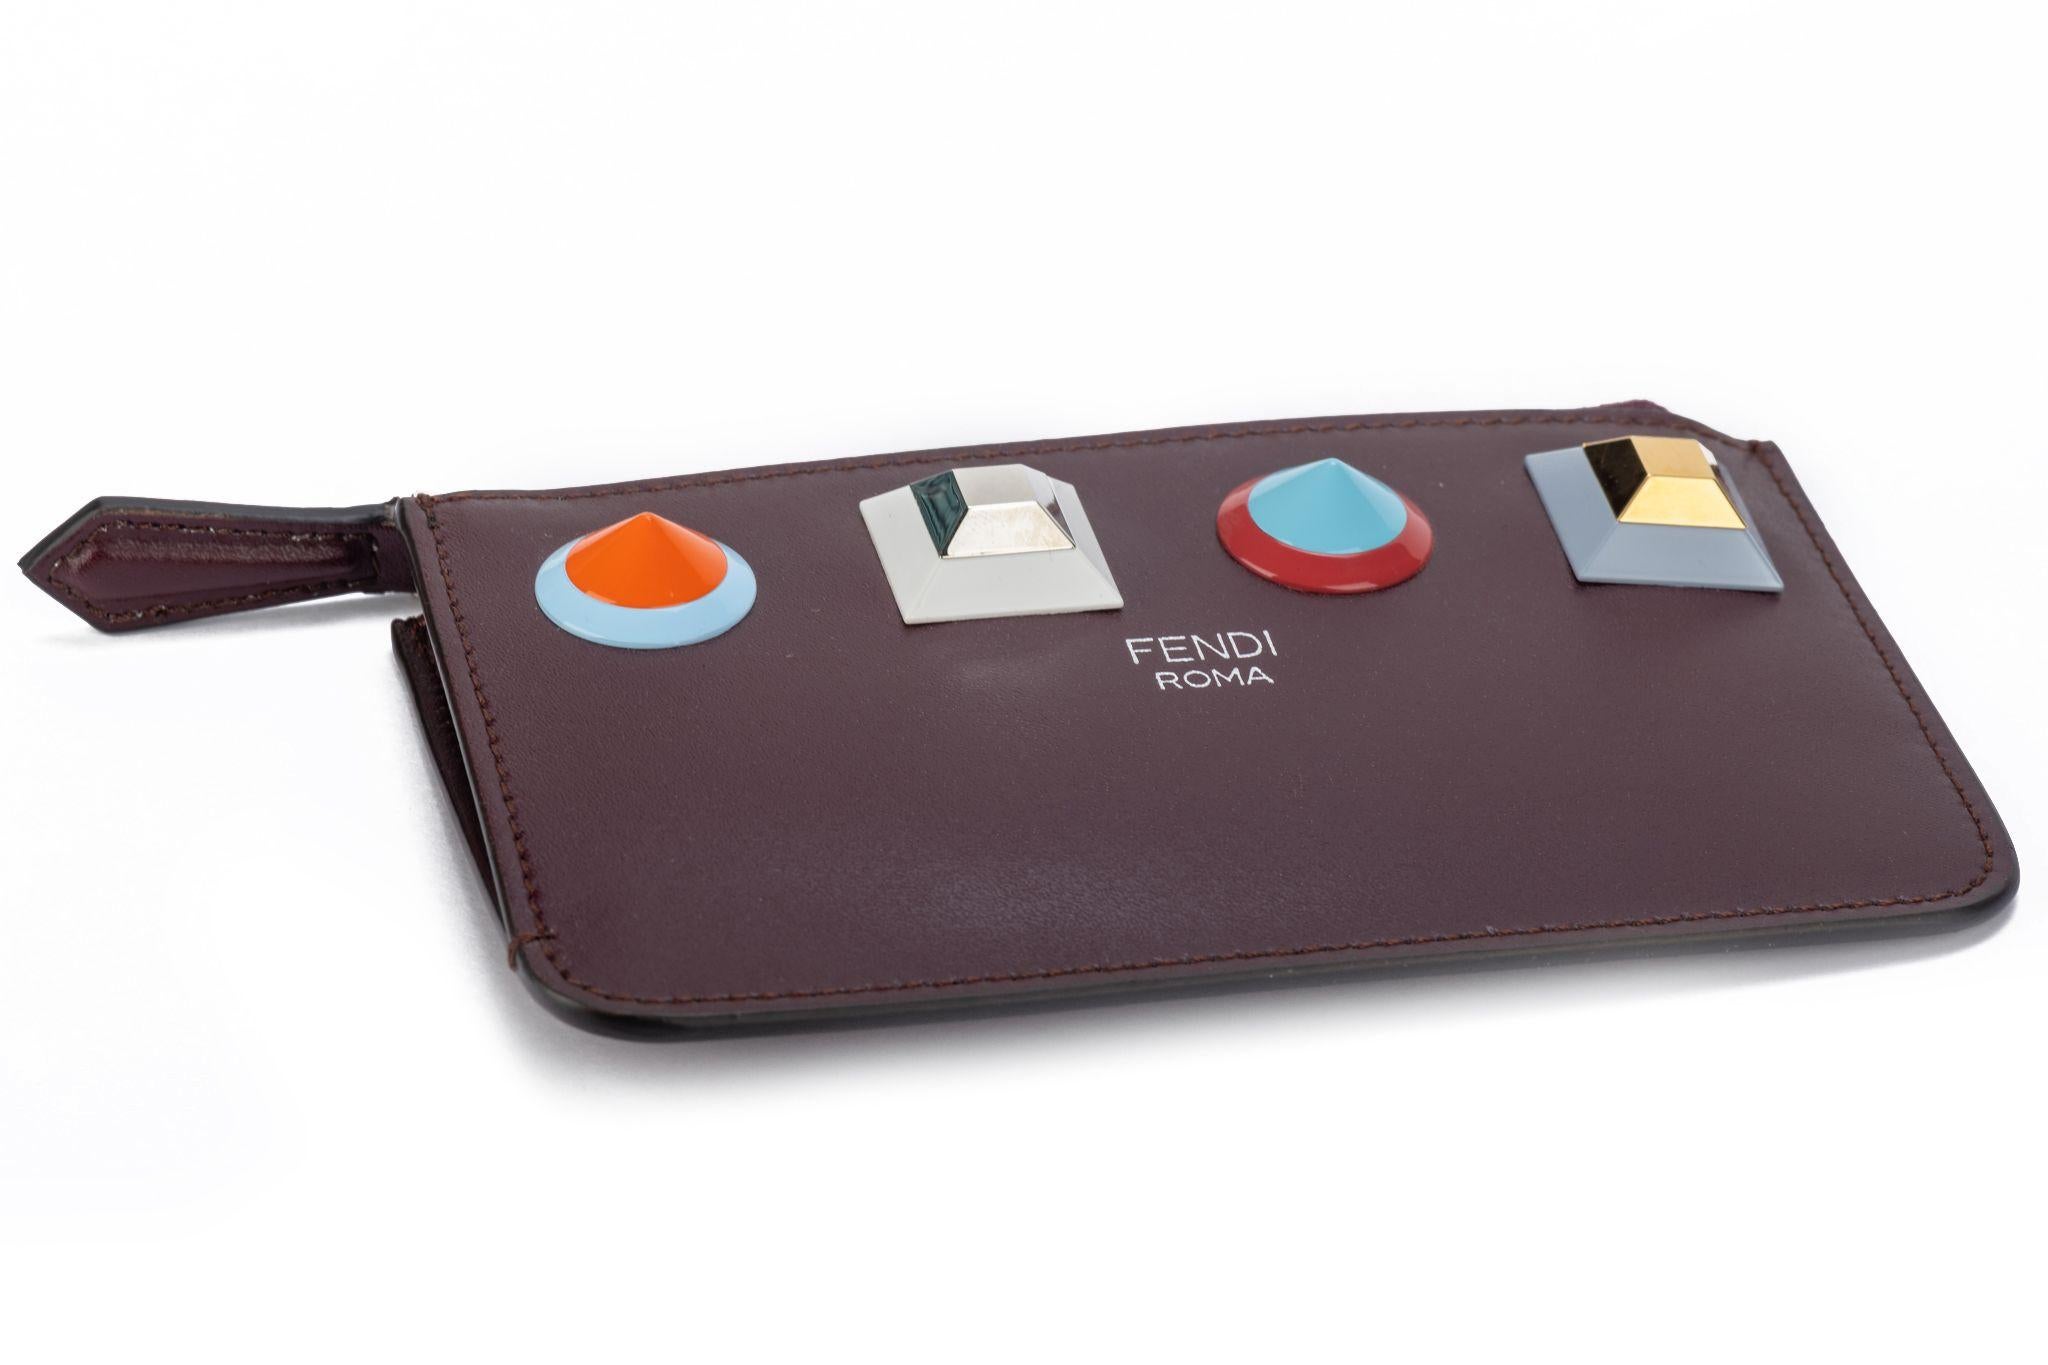 Fendi nouveau porte-clés/portefeuille zippé en cuir bordeaux avec clous colorés .
Boîte et housse originale.